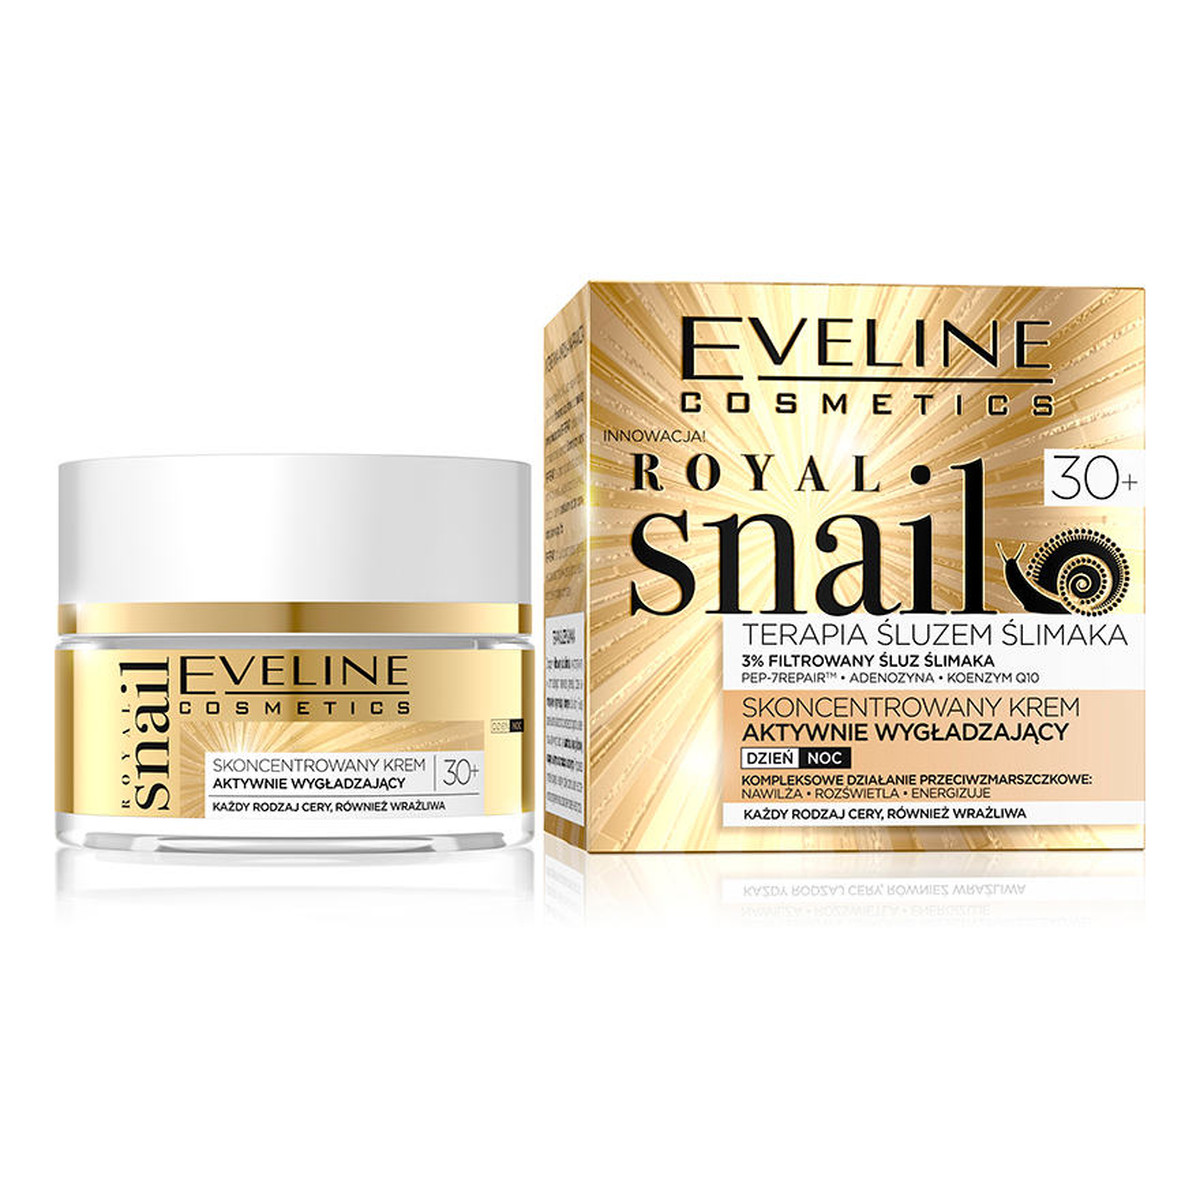 Eveline Royal Snail skoncentrowany krem aktywnie wygładzający 30+ na dzień na noc 50ml